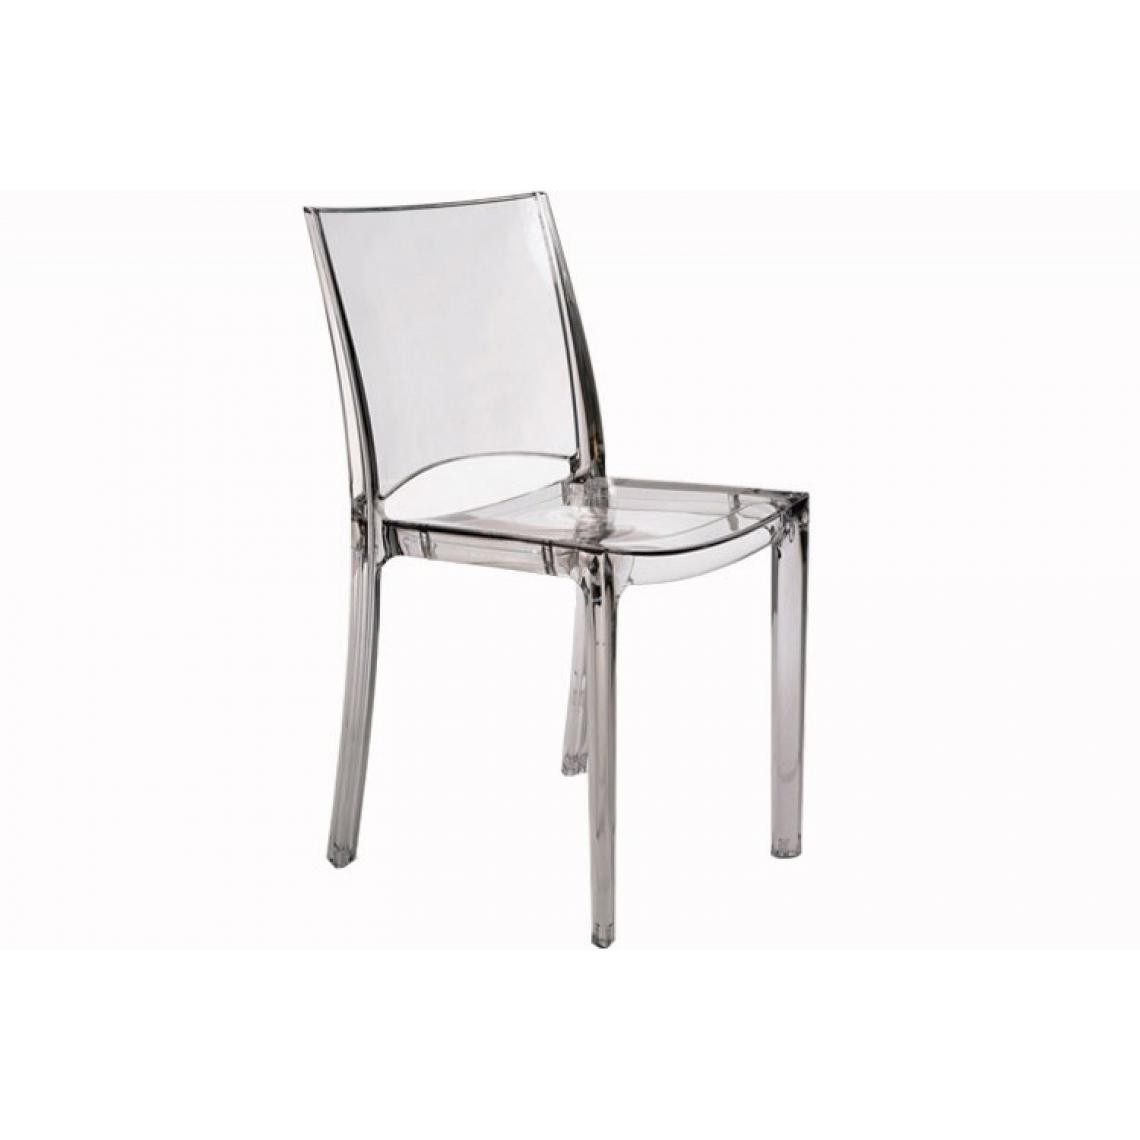 3S. x Home - Chaise Design Transparente NILO - Chaises